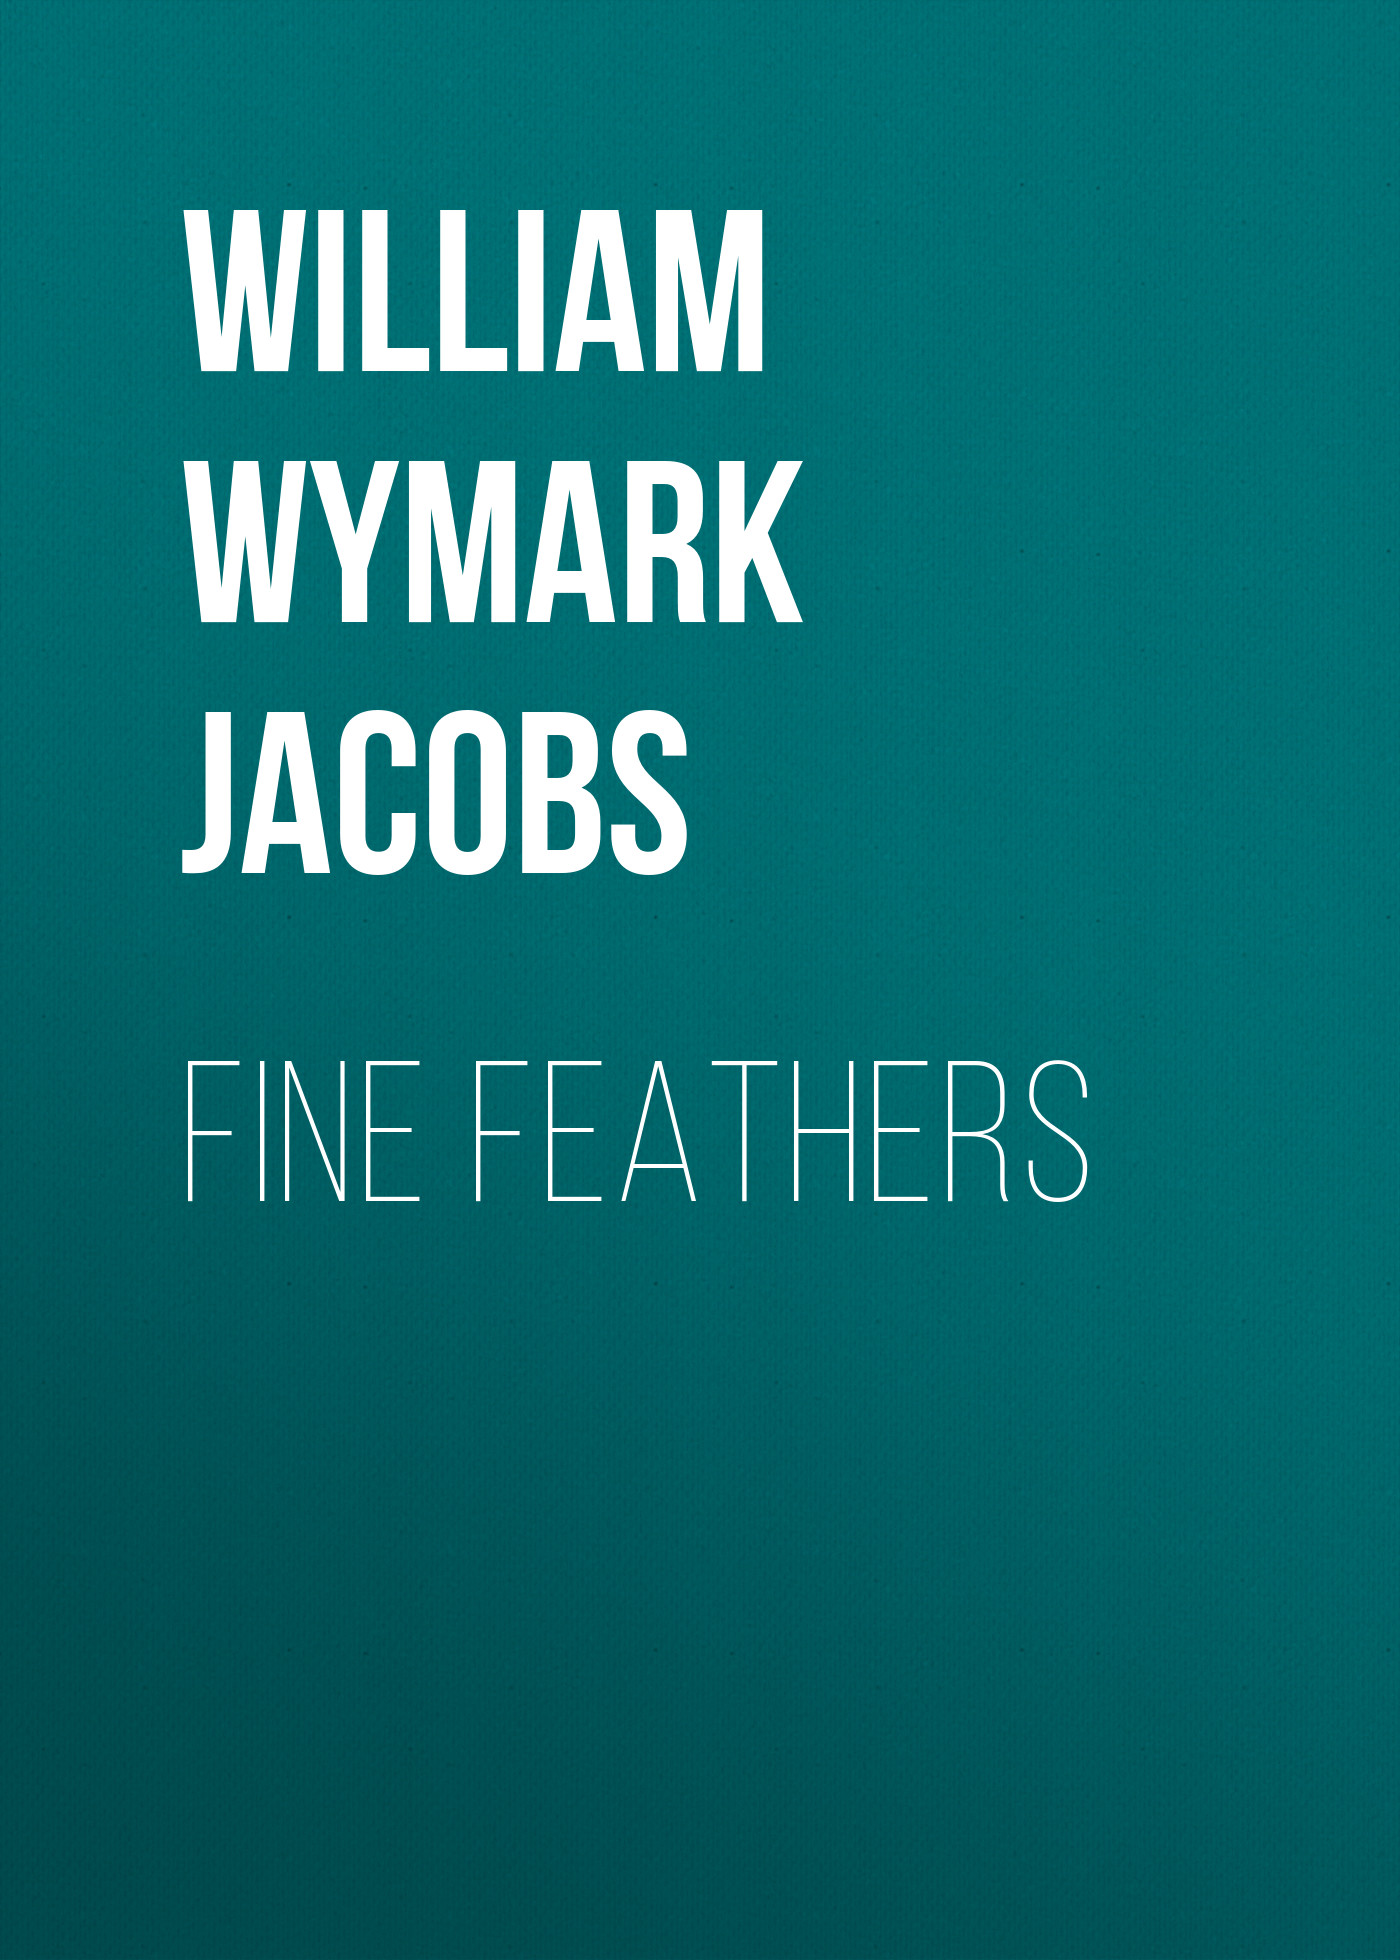 Книга Fine Feathers из серии , созданная William Wymark Jacobs, может относится к жанру Зарубежная классика, Зарубежная старинная литература. Стоимость электронной книги Fine Feathers с идентификатором 34842454 составляет 0 руб.